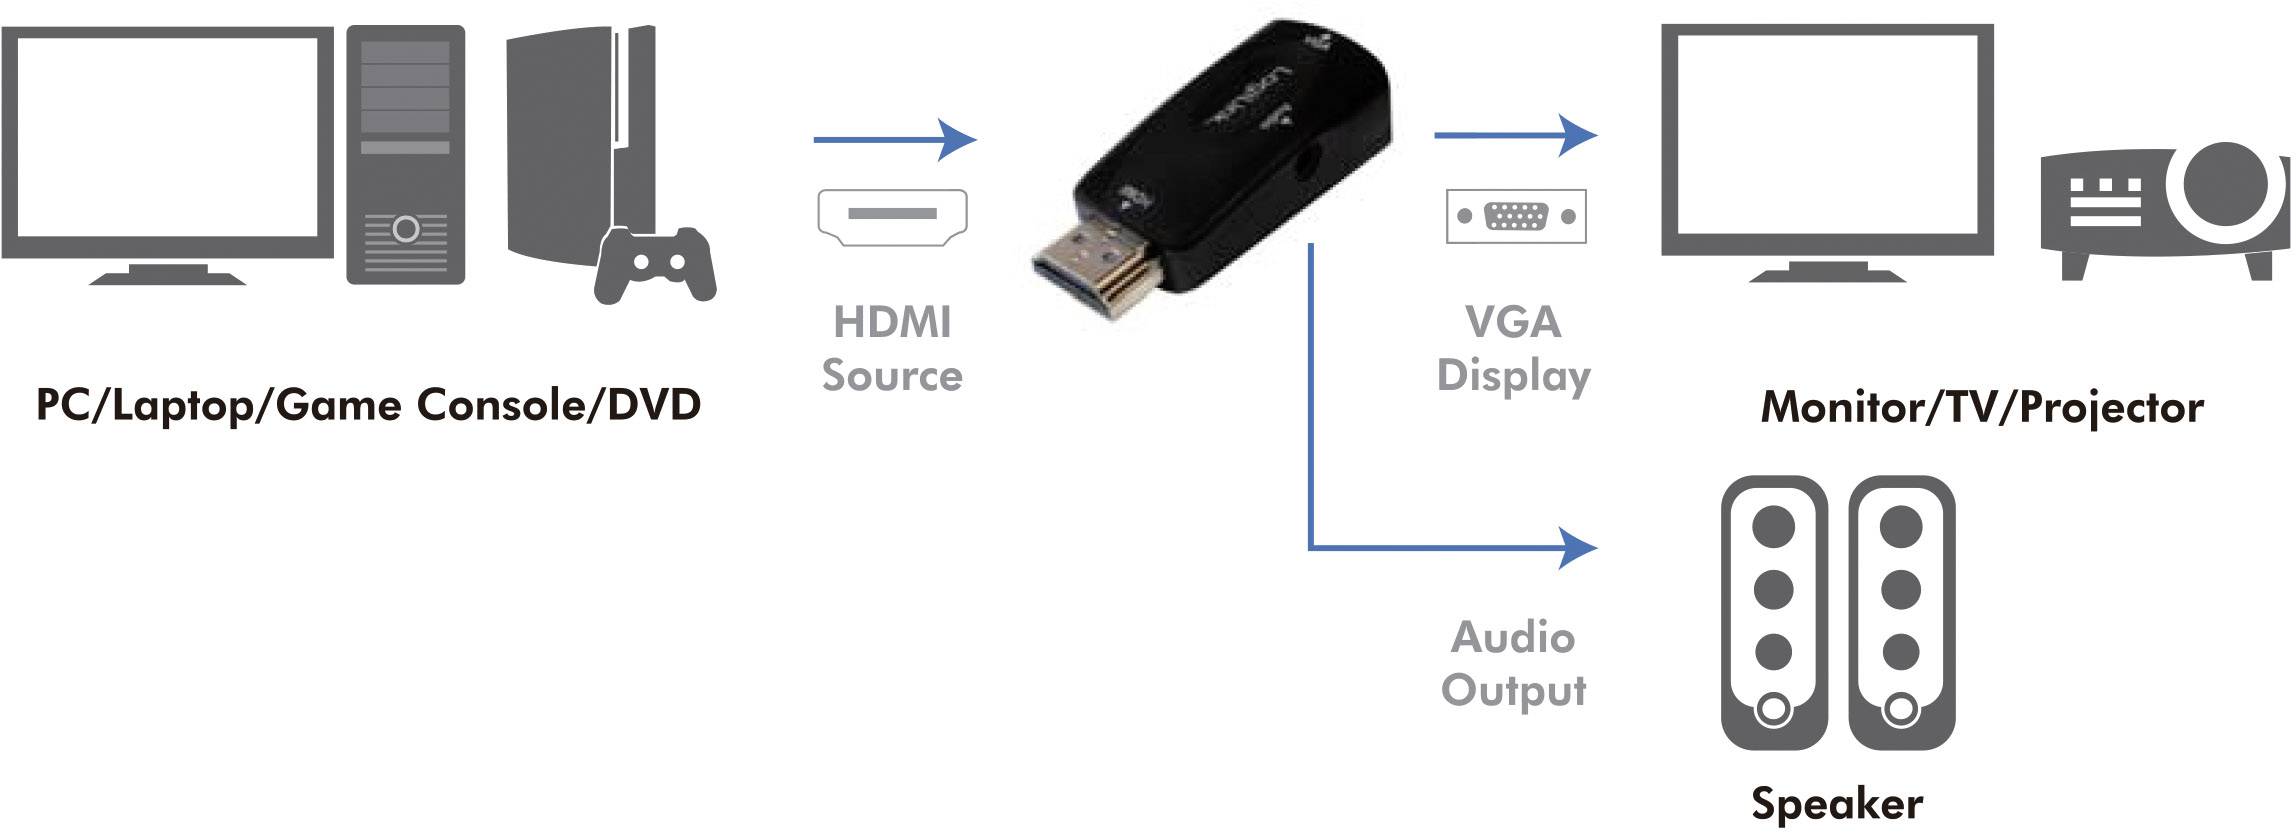 HDMI Adapter verbindet Player wie Blu-ray über HDMI-Stecker mit VGA-Ausgang älterer Geräte